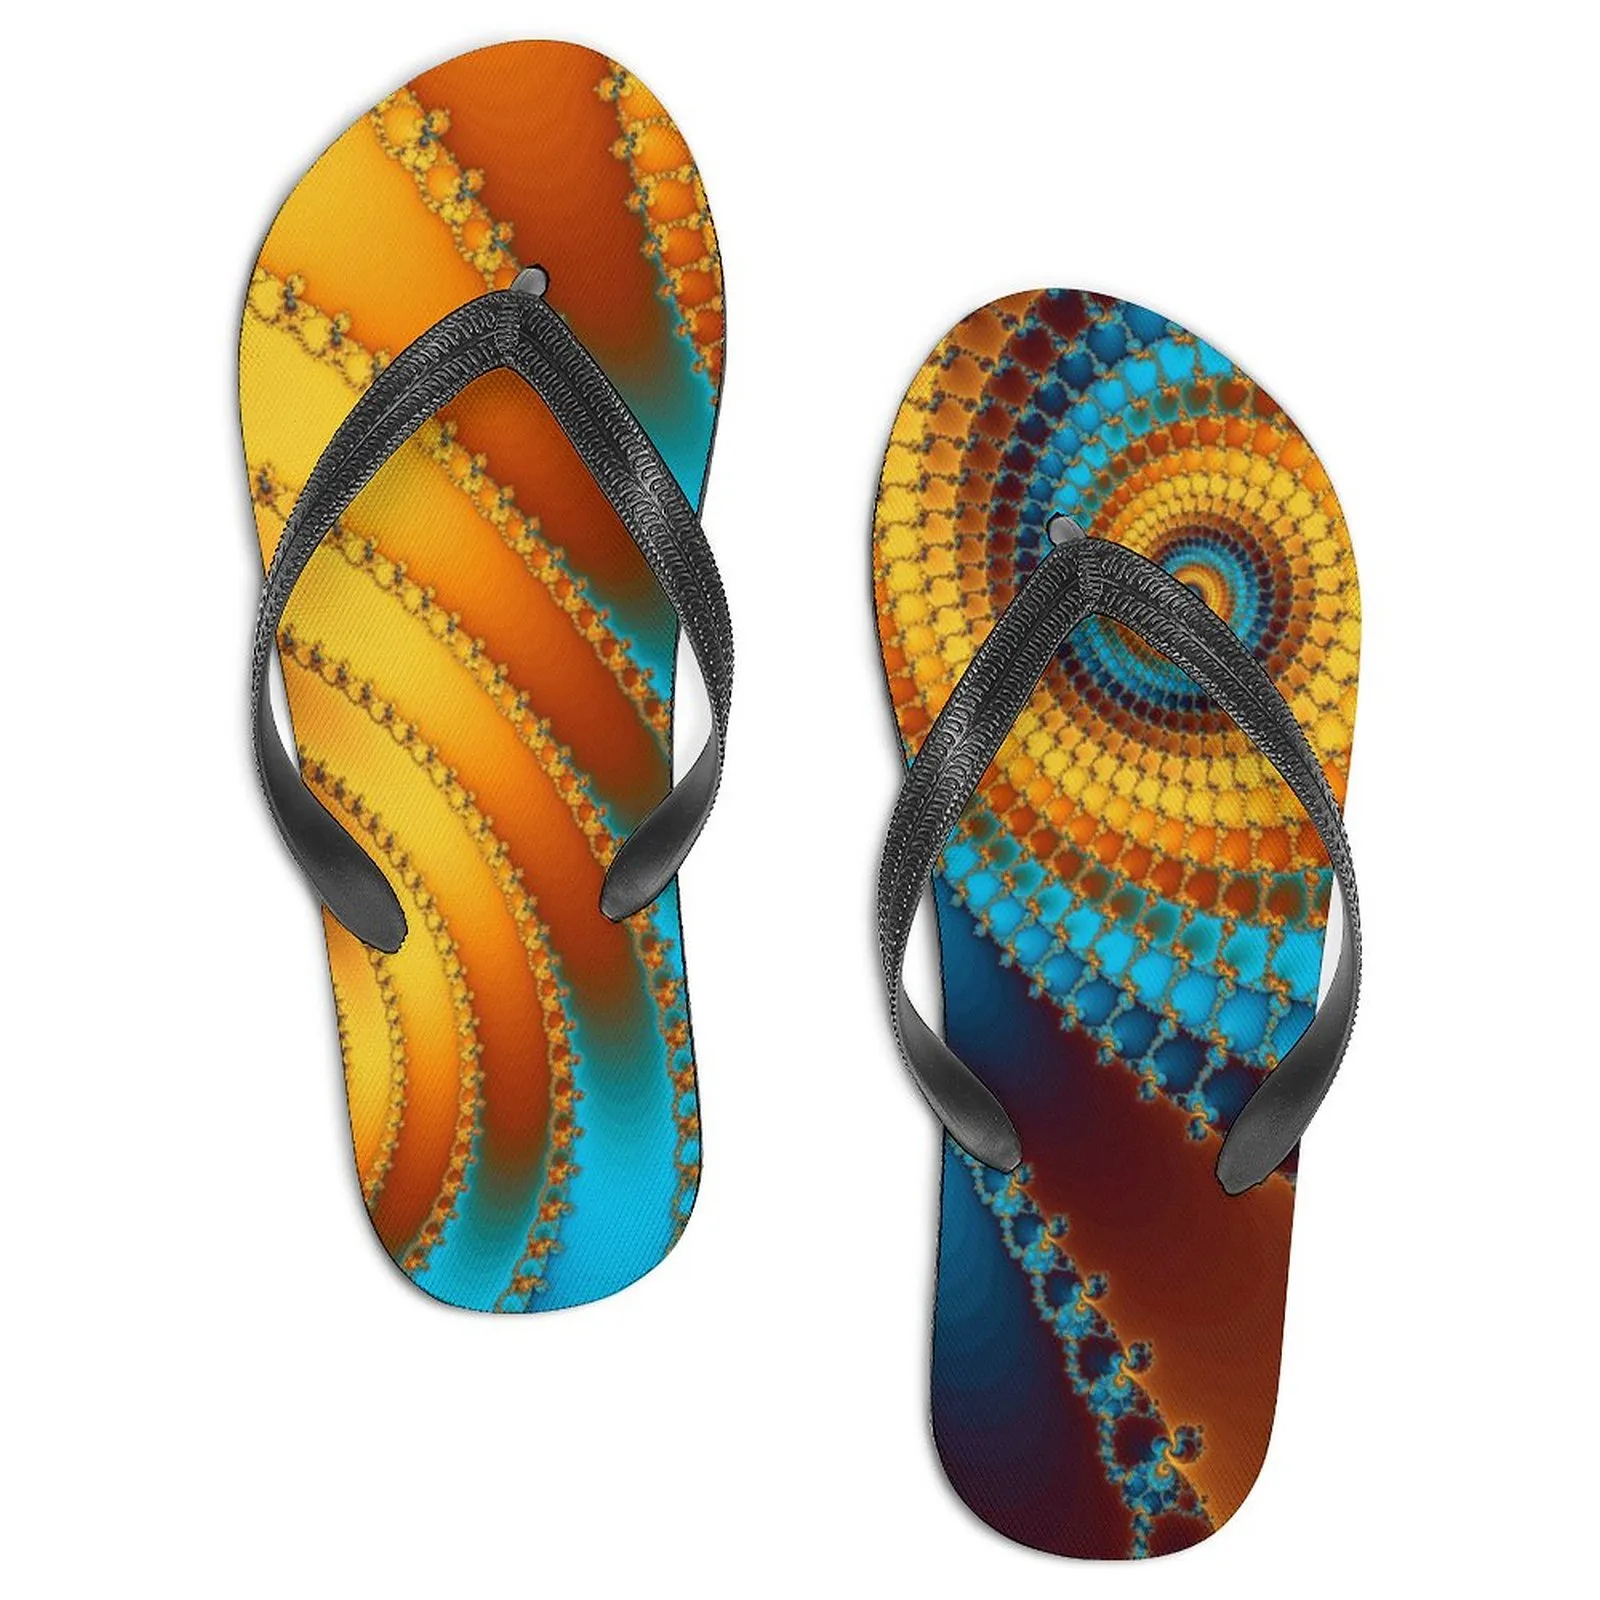 Slipper glisses sandales Modèle personnalisé DIY Design Casual Chores Taille 39-46 fractal-7212396